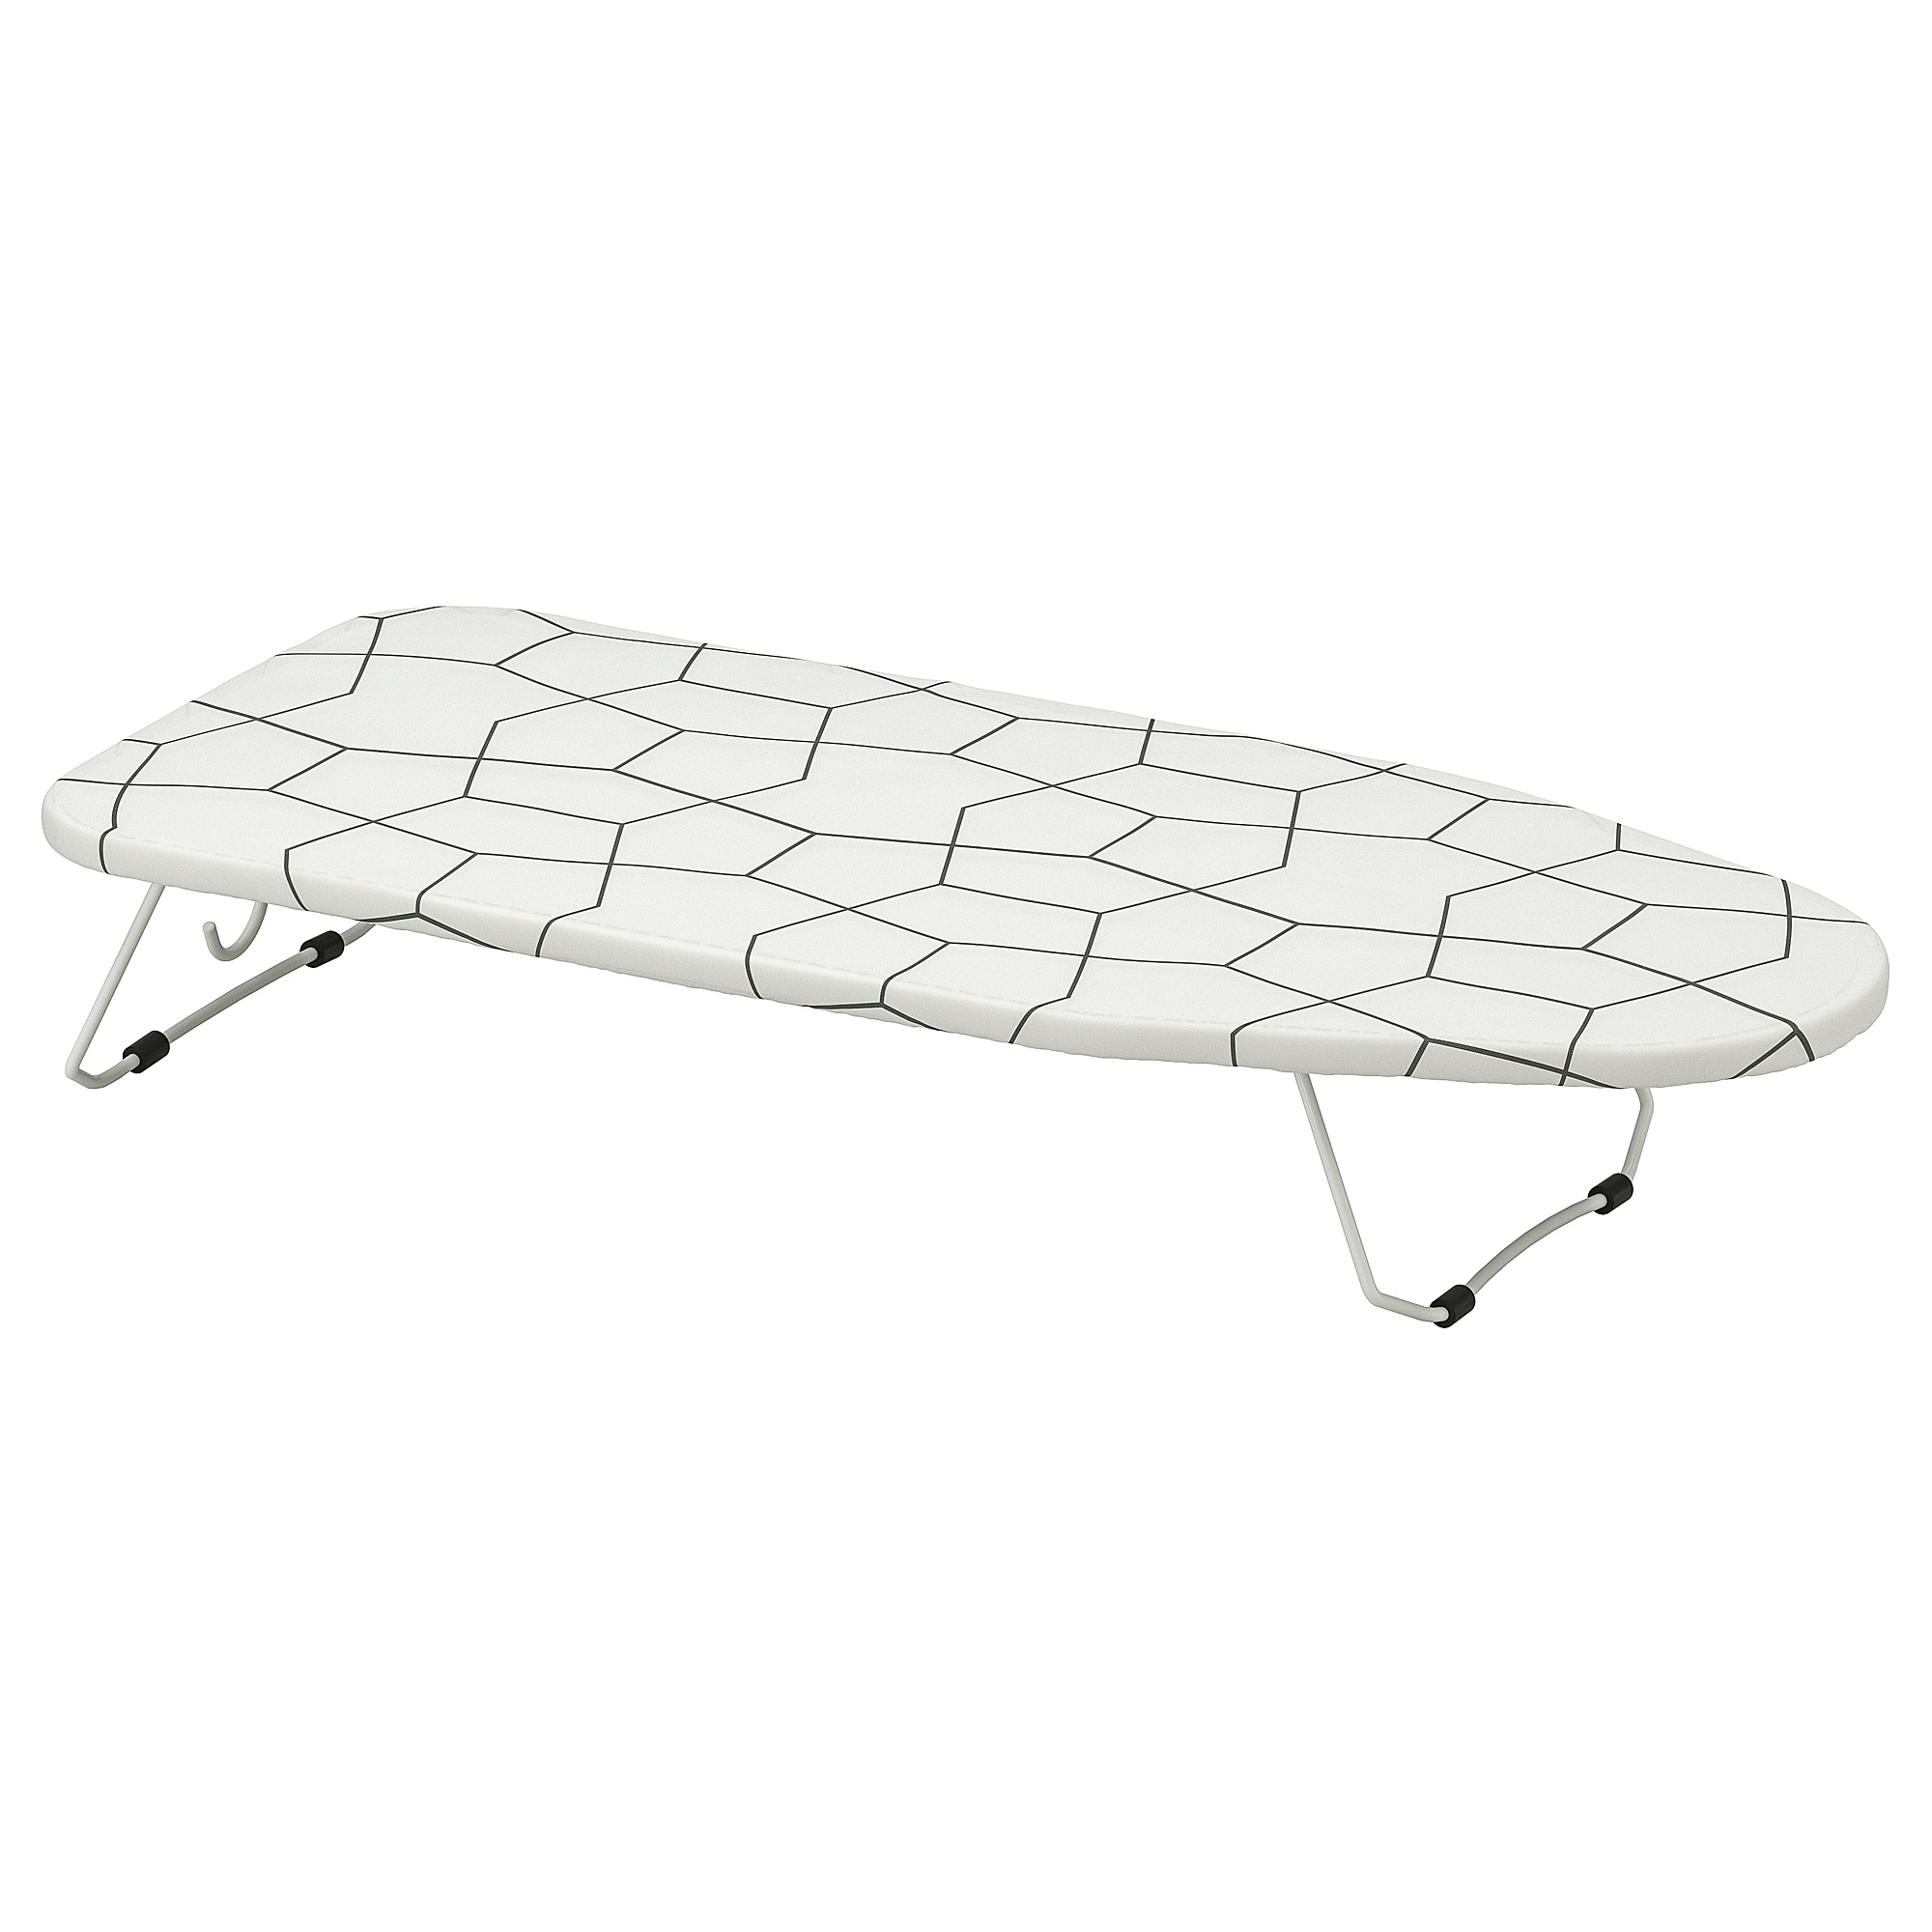 JÄLL ironingboard, table